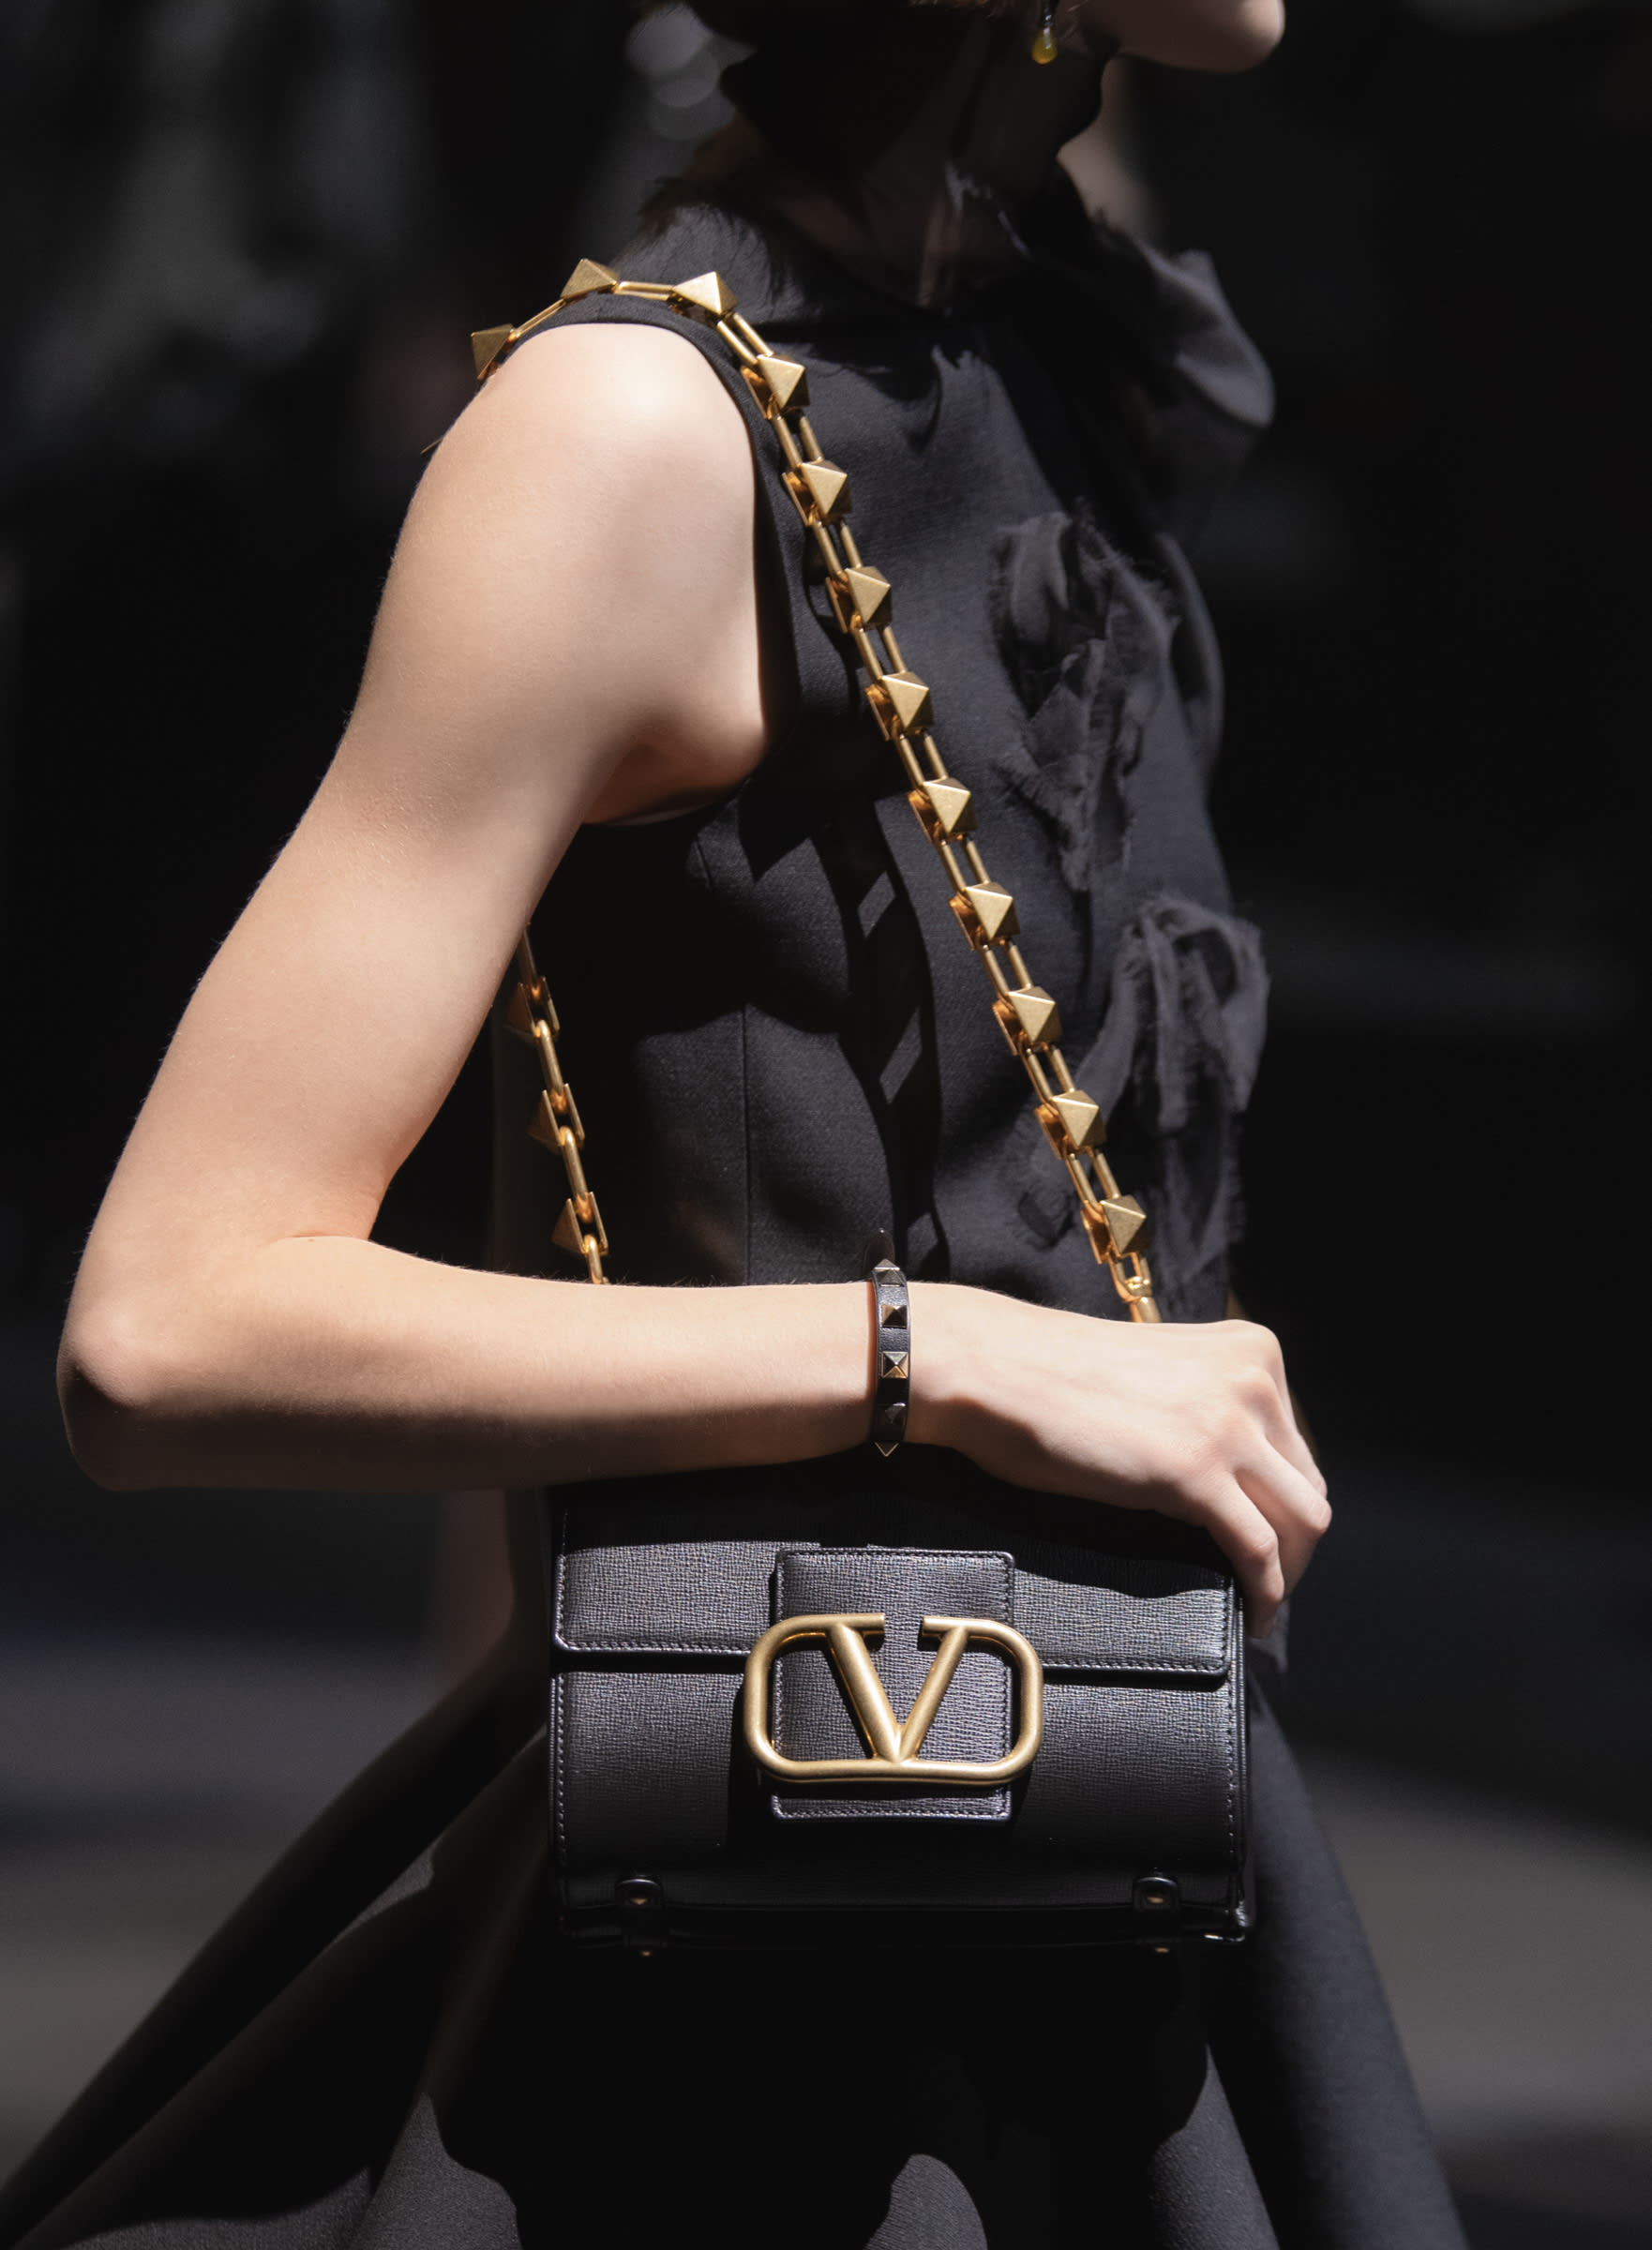 ヴァレンティノ、ブランドを象徴するVロゴをあしらった新作バッグ 